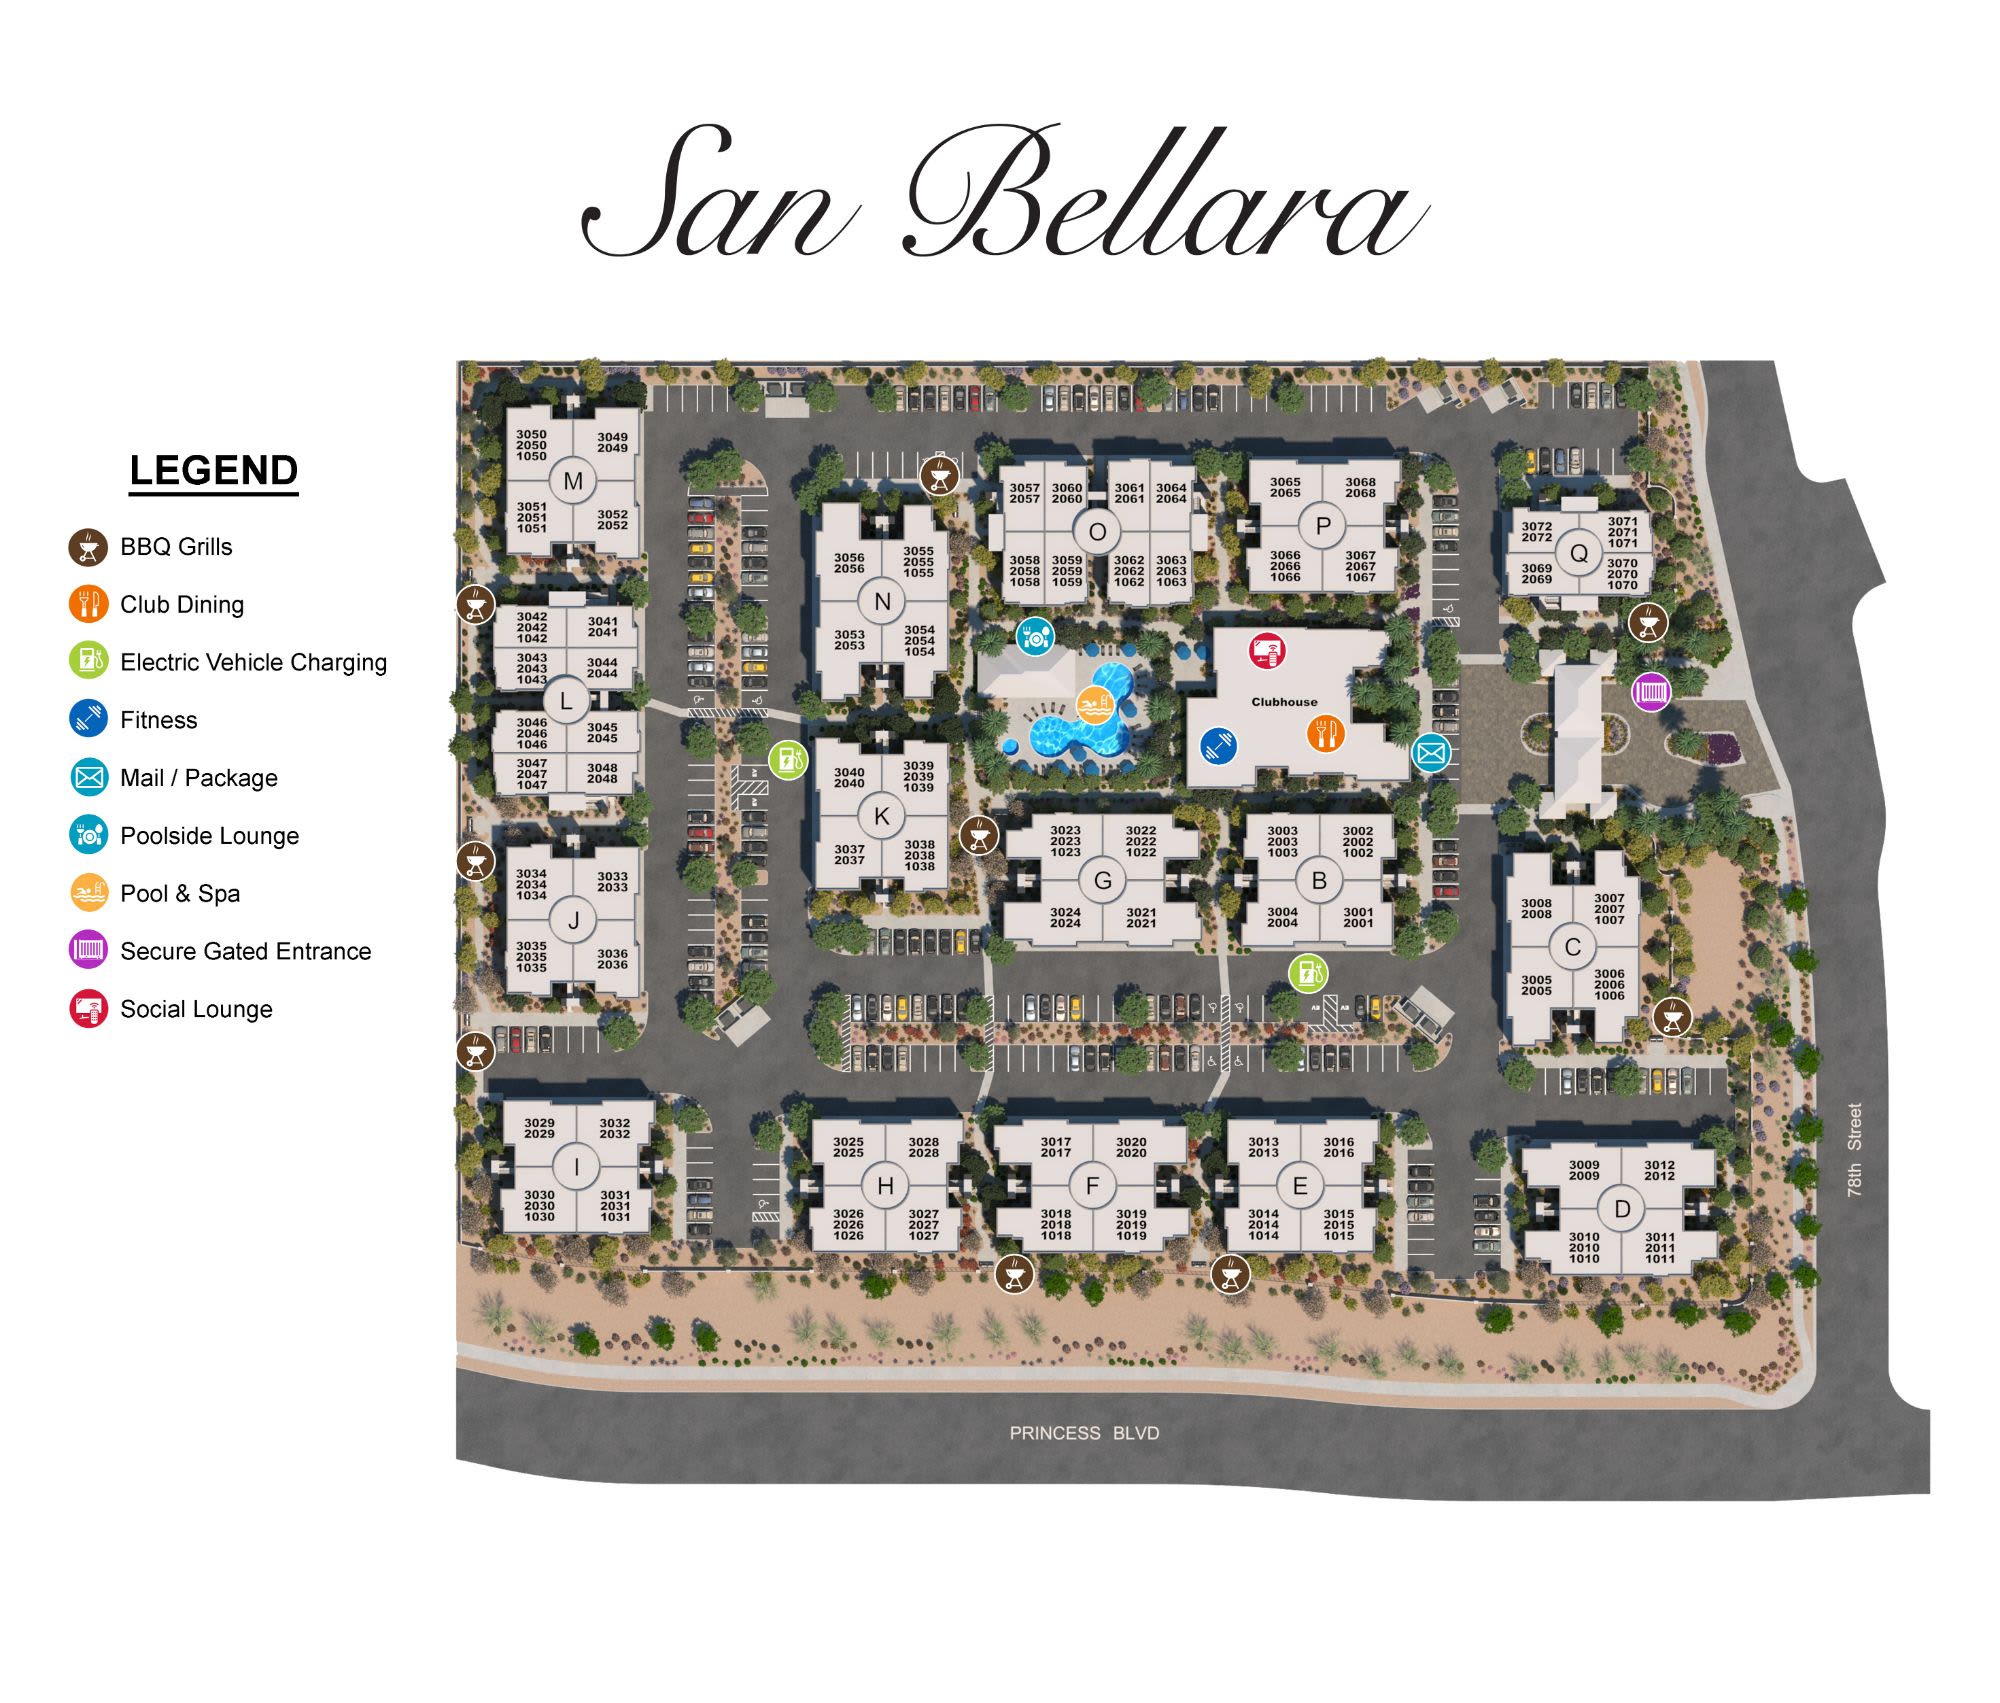 San Bellara site plan